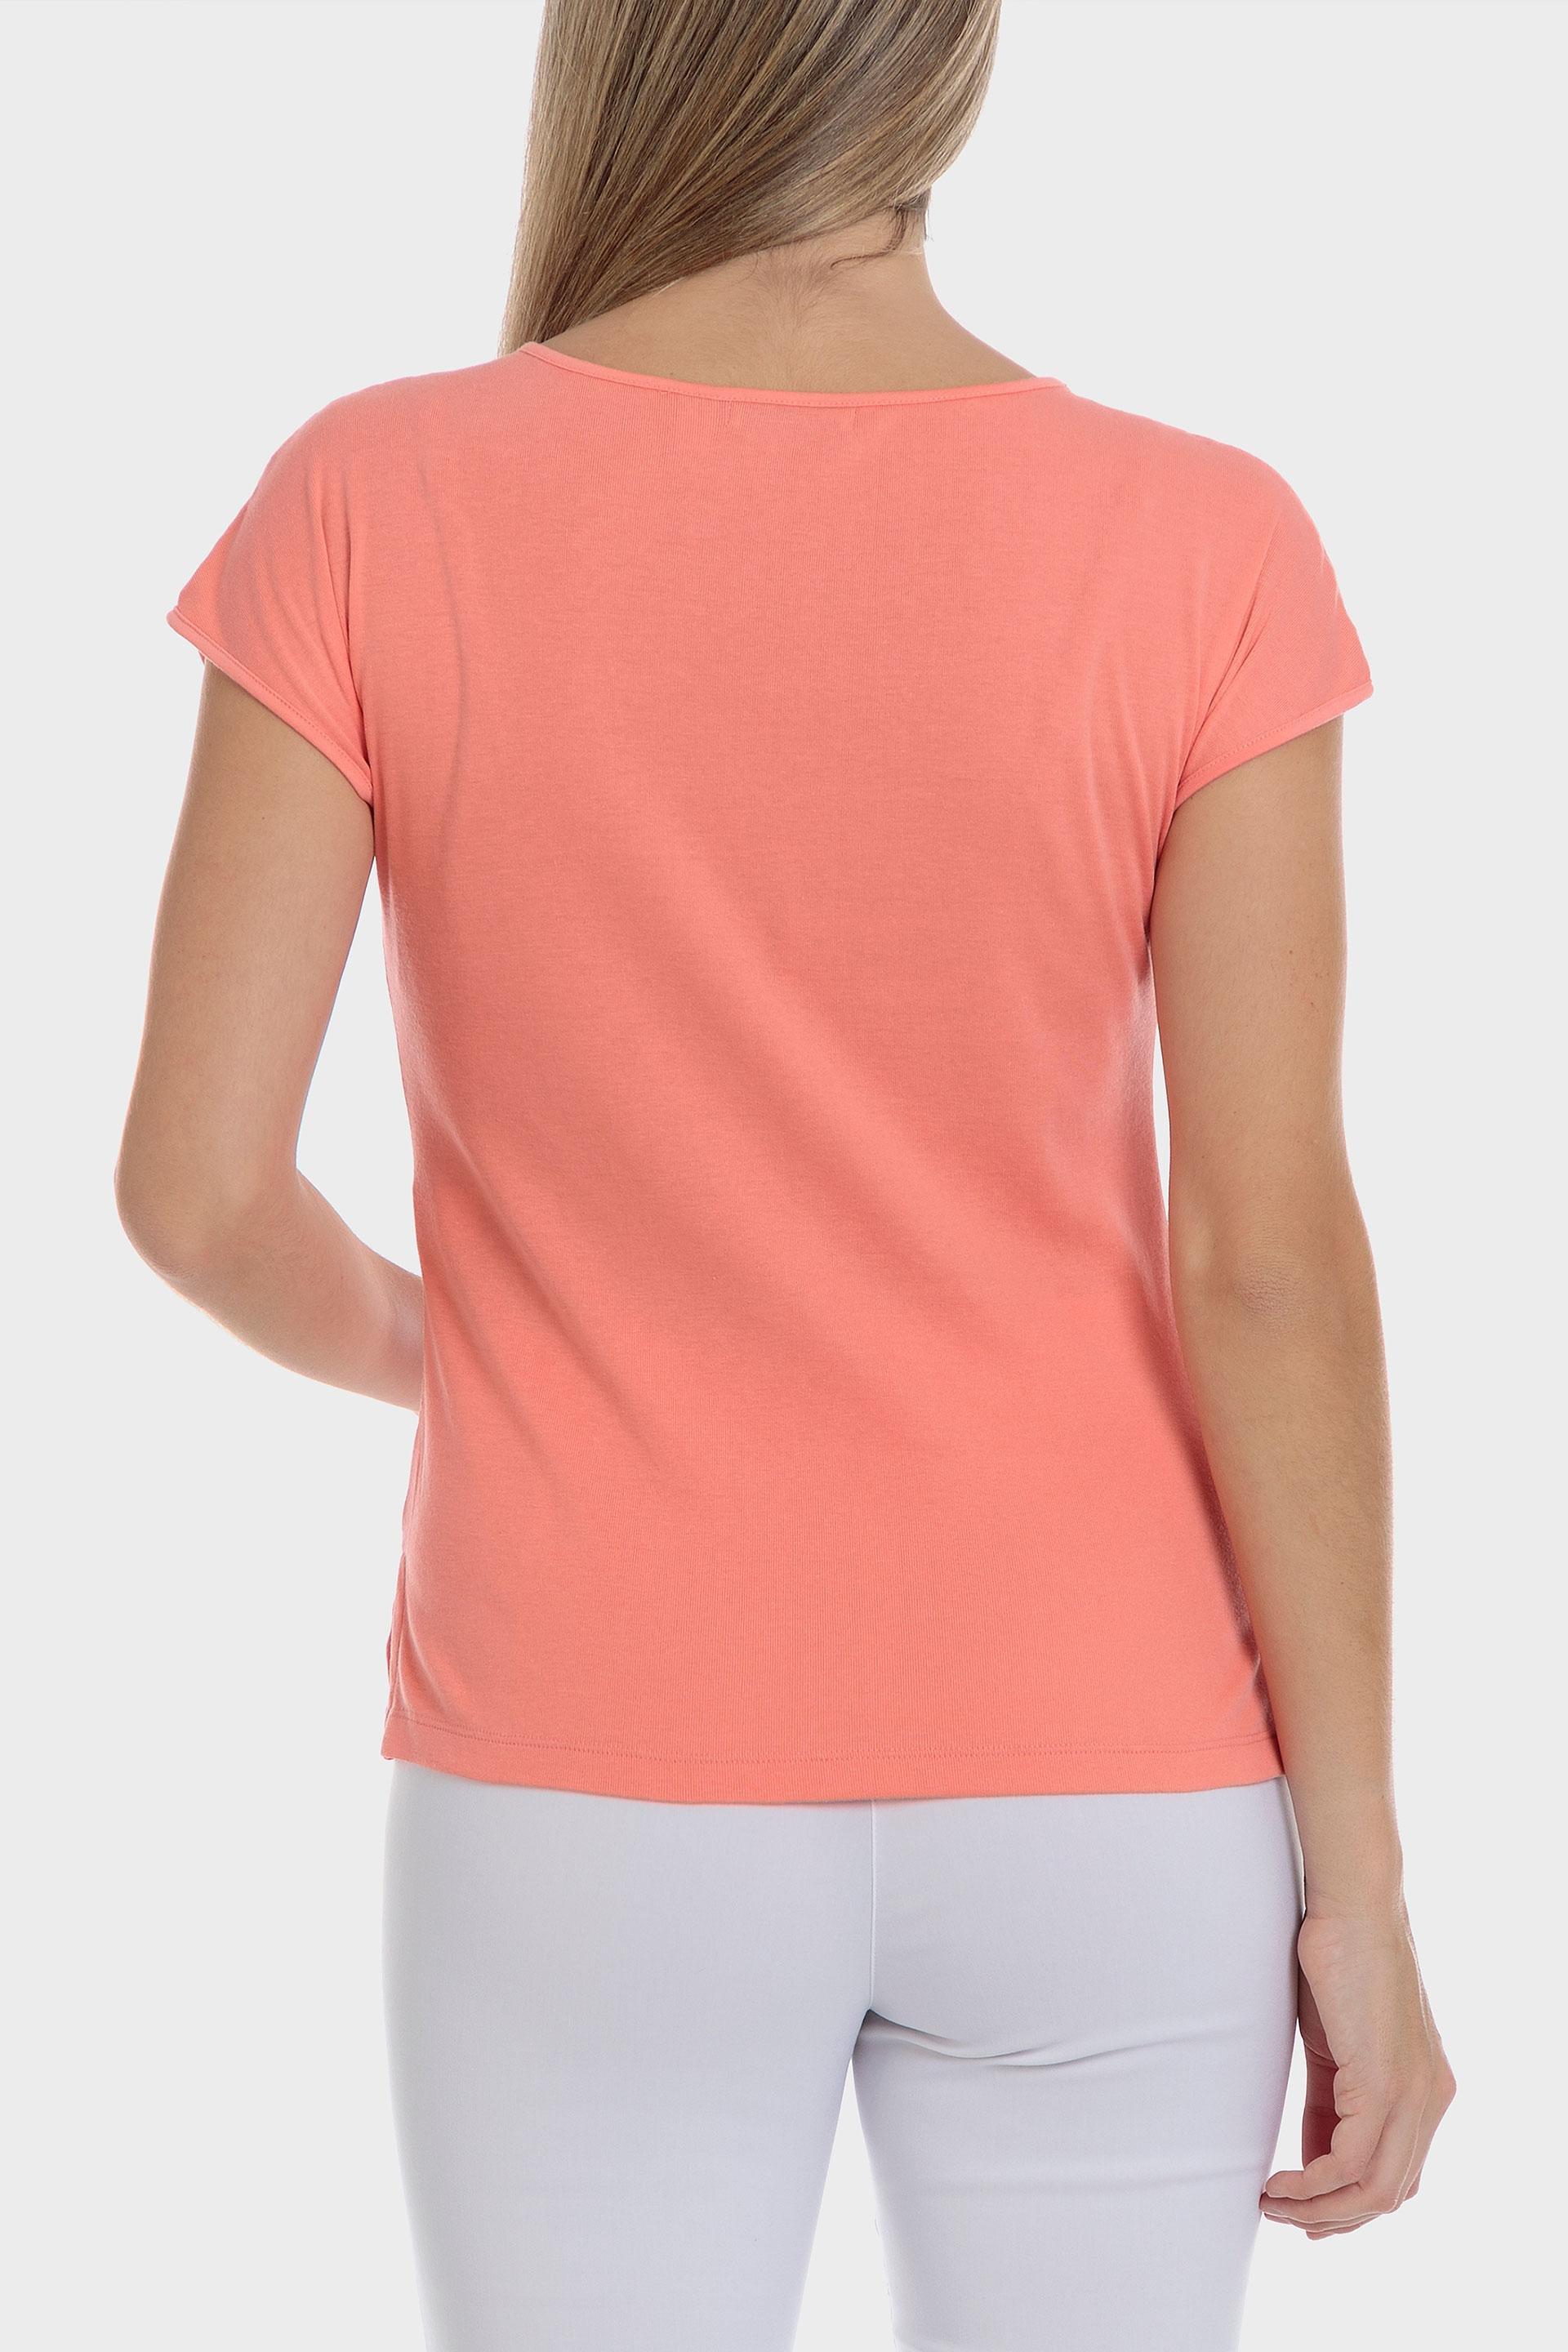 Punt Roma - Pink Basic Fantasy T-Shirt